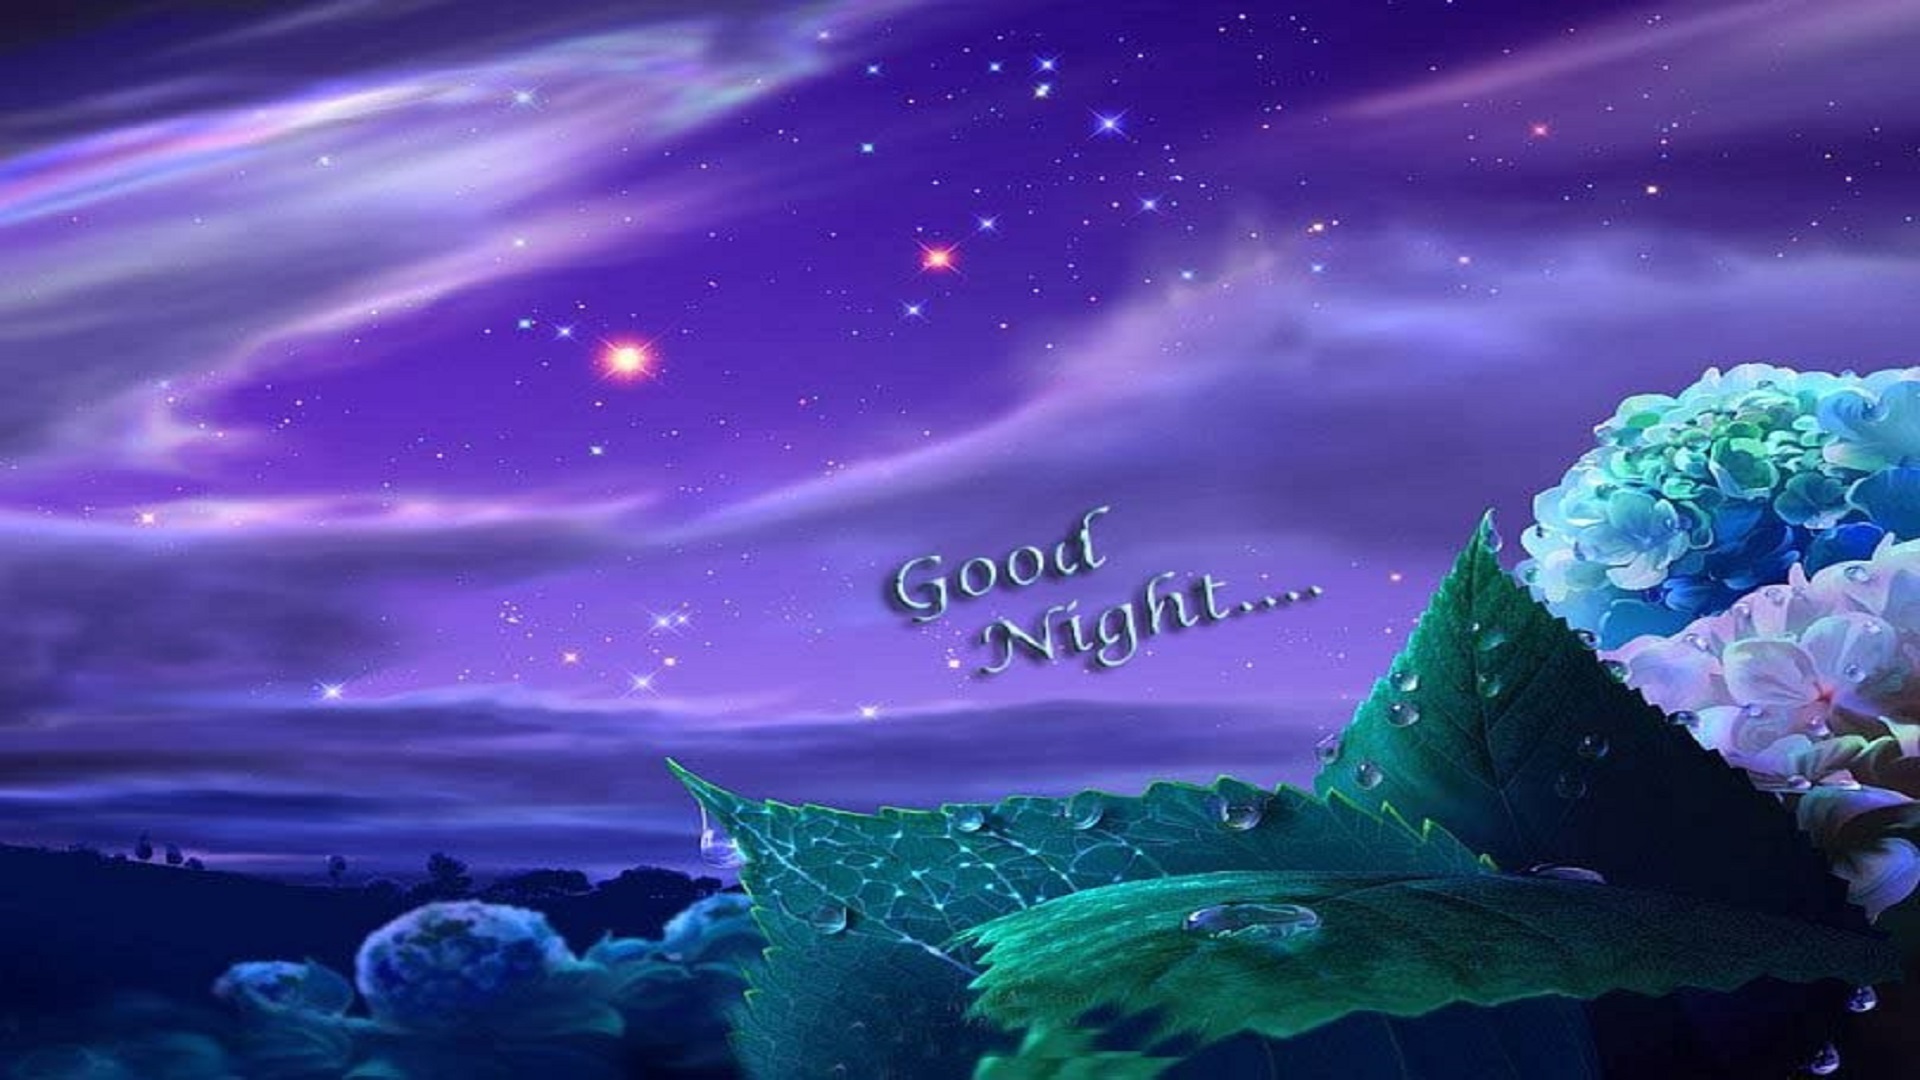 좋은 밤의 hd 벽지 무료 다운로드,하늘,자연,자연 경관,보라색,제비꽃